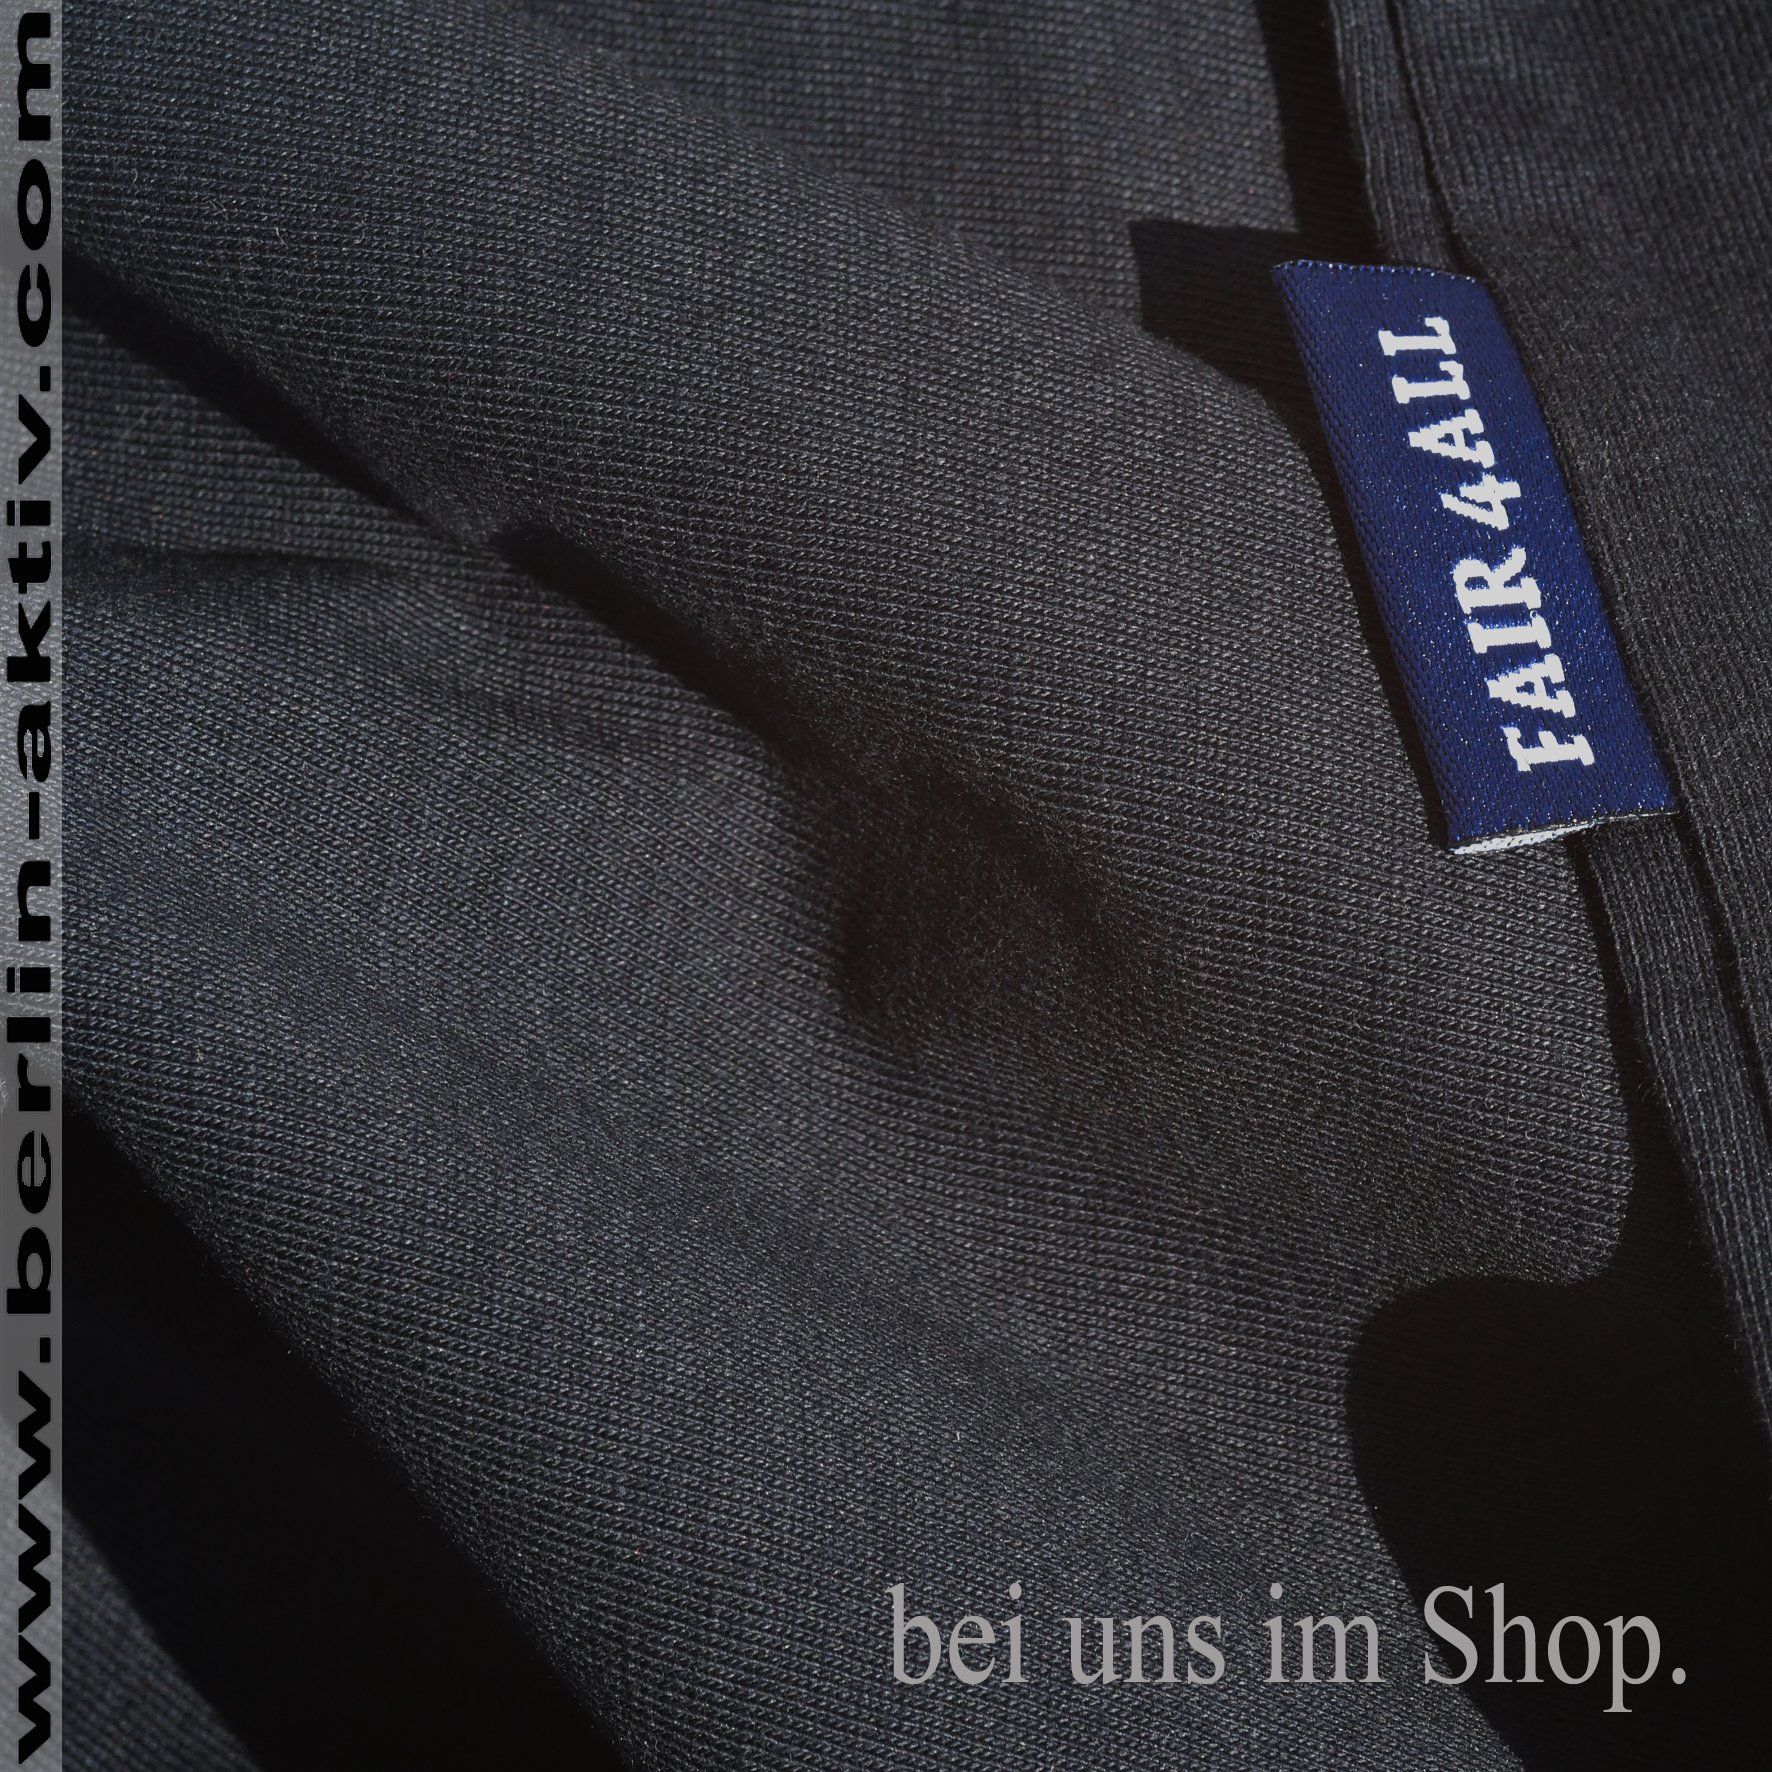 berlin-aktiv.com T-Shirt schwarz, V-Kragen, Bio Baumwolle 100%, fair produziert, im Shop